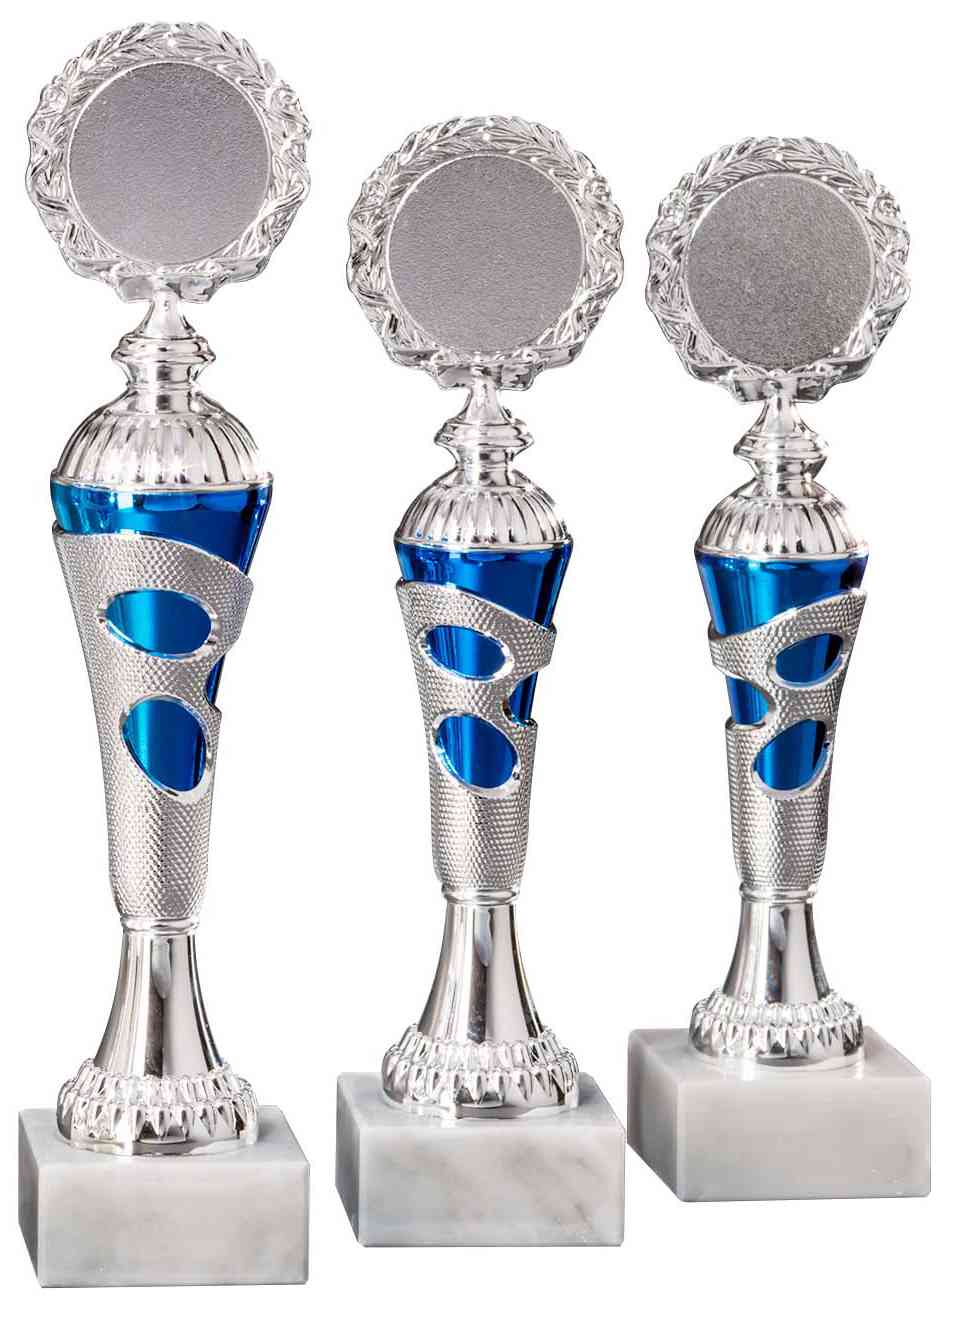 Drei silberne und blaue Pokale Menden 3-er Pokalserie 255 mm – 290 mm PK754680-3-E50 in unterschiedlichen Höhen sind in einer Reihe auf weißen Marmorsockeln platziert und dienen jeweils als glänzendes Erinnerungsstück.